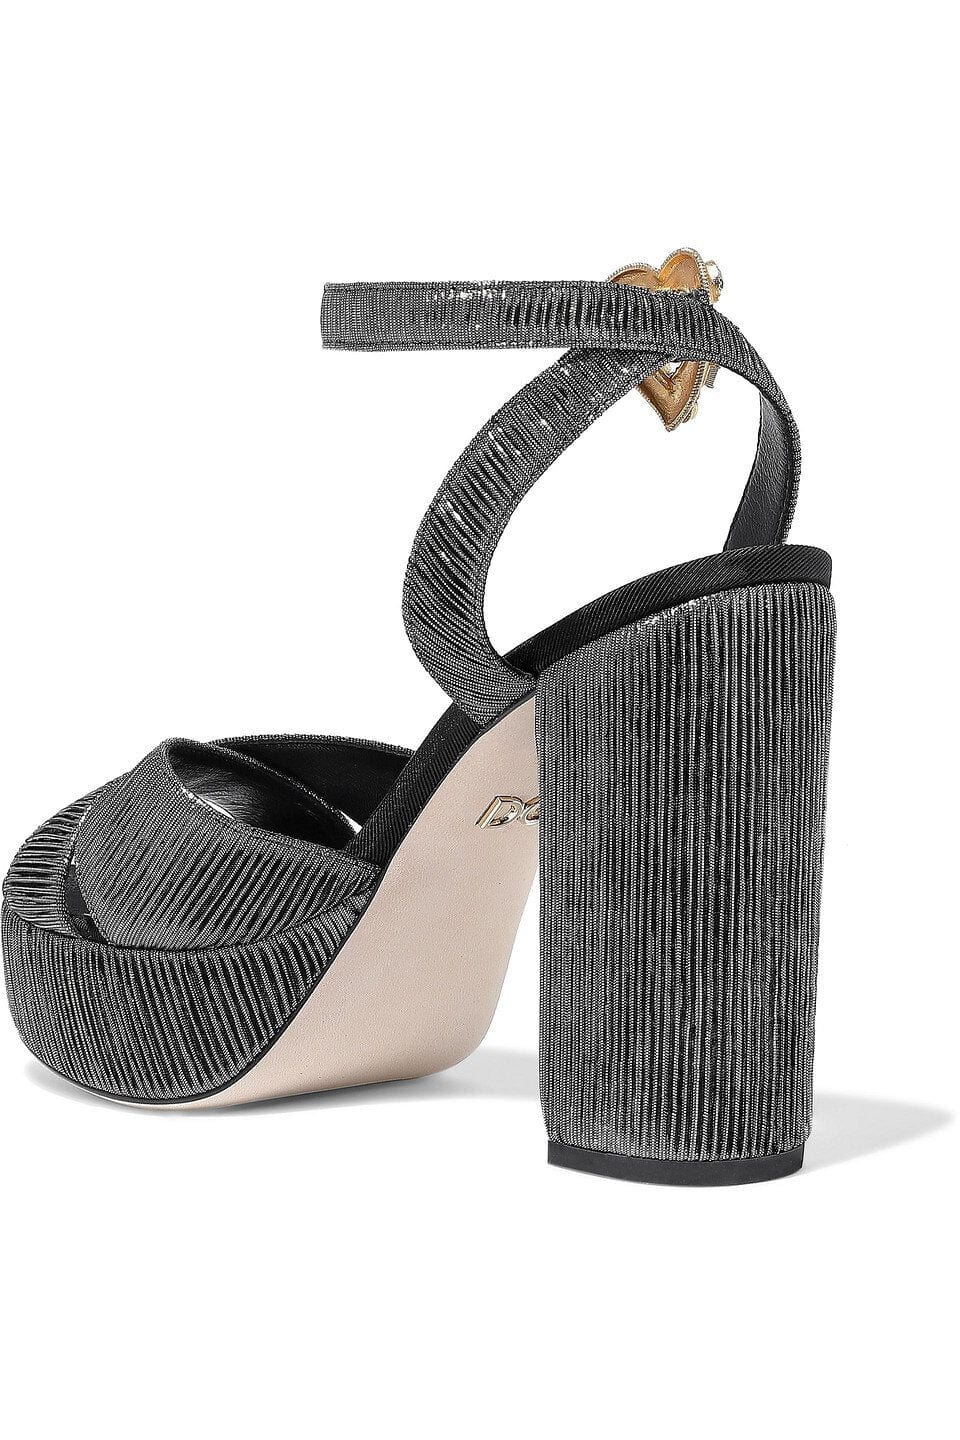 Dolce & Gabbana Lamé Embellished Platform Sandals